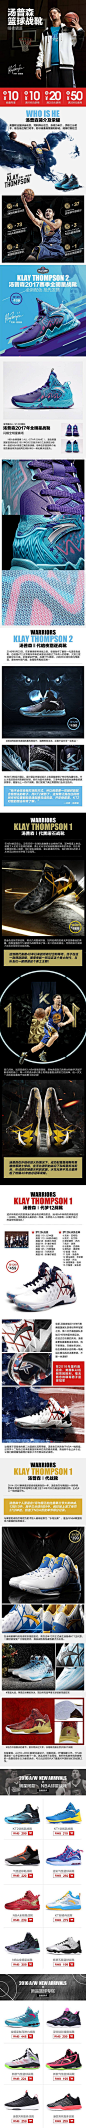 安踏-双12-汤普森篮球专区  运动鞋 无线端首页 无线端页面 运动鞋无线端页面 篮球鞋